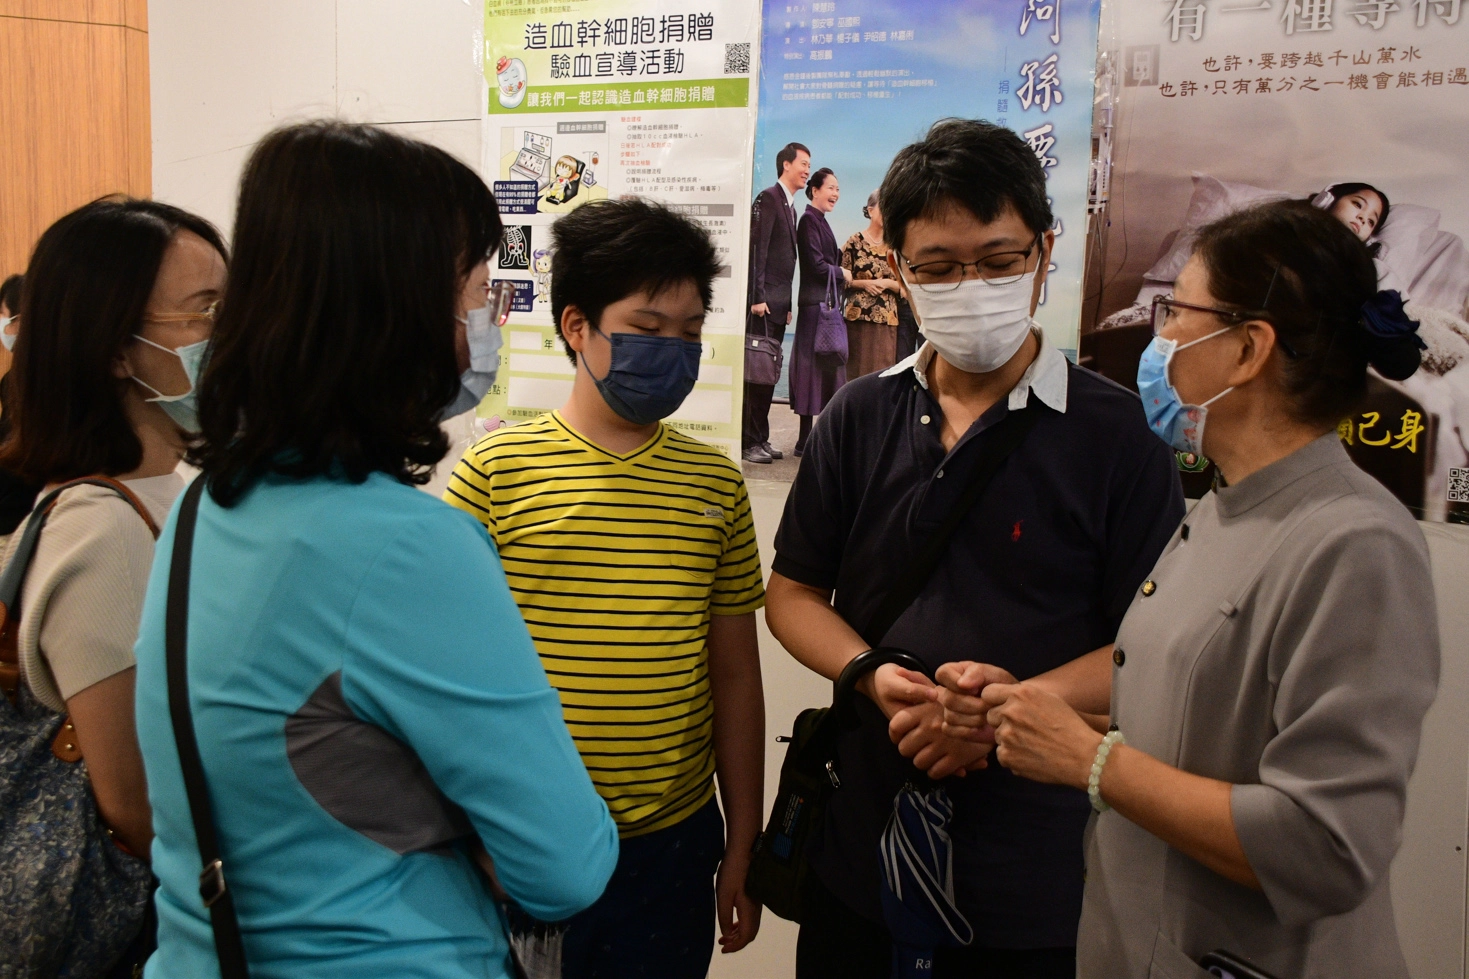 李傲潛(右二)帶著兒子接受中心蘇惠鈺組長(右一)的邀請響應活動，希望透過宣導過程向社會大眾現身說法。